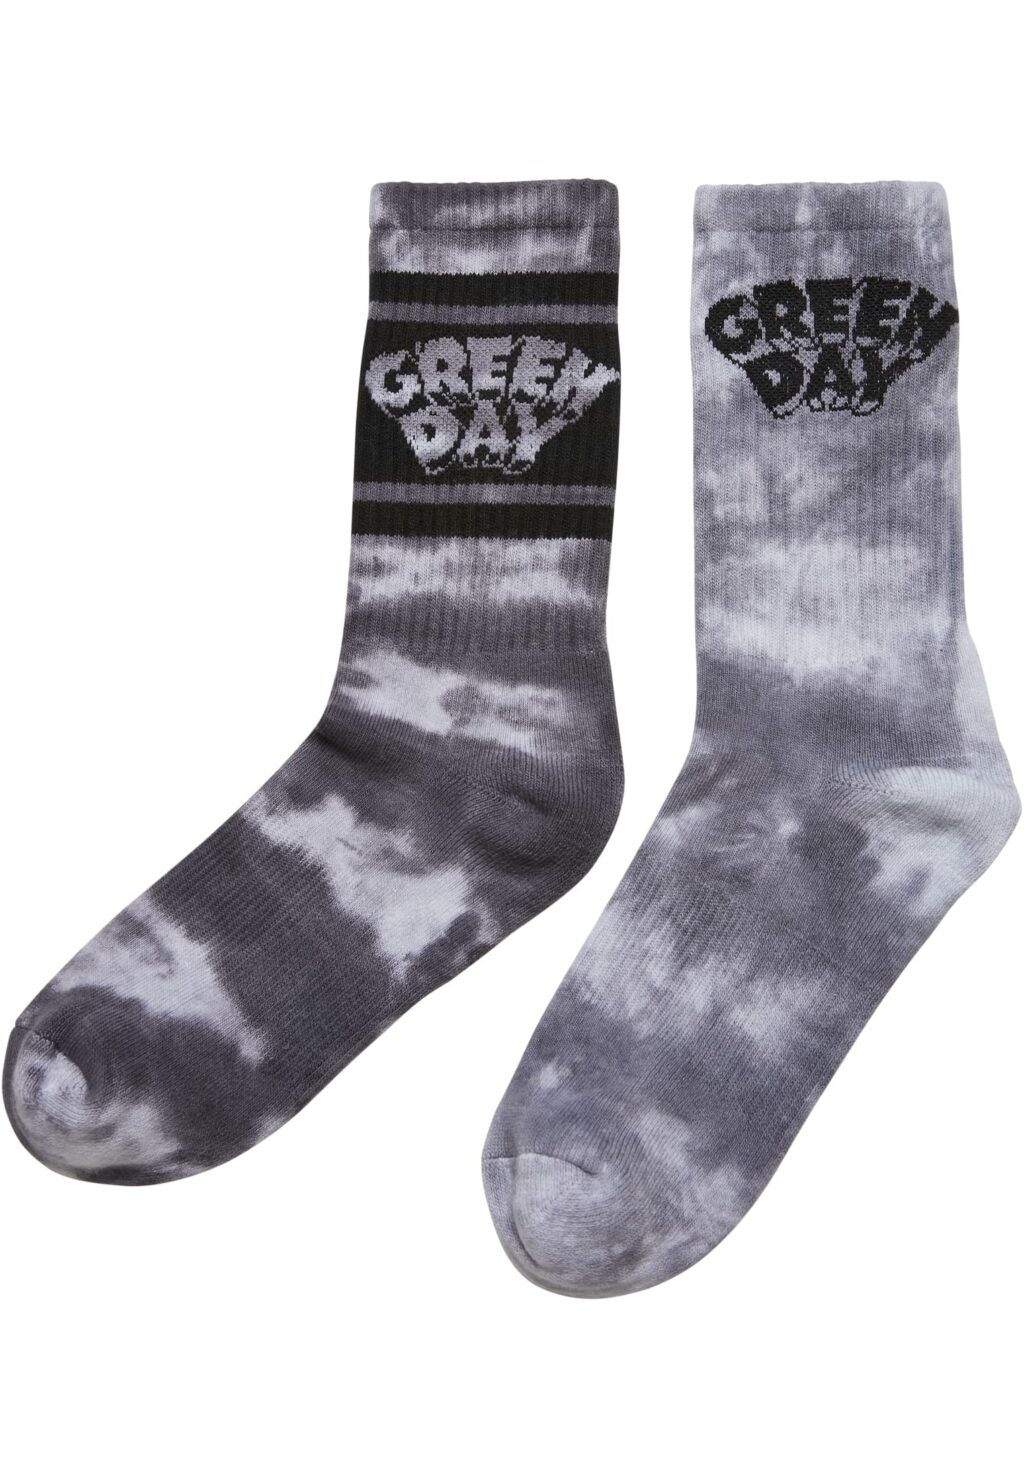 Green Day Tie Die Socks 2-Pack black/white MC812